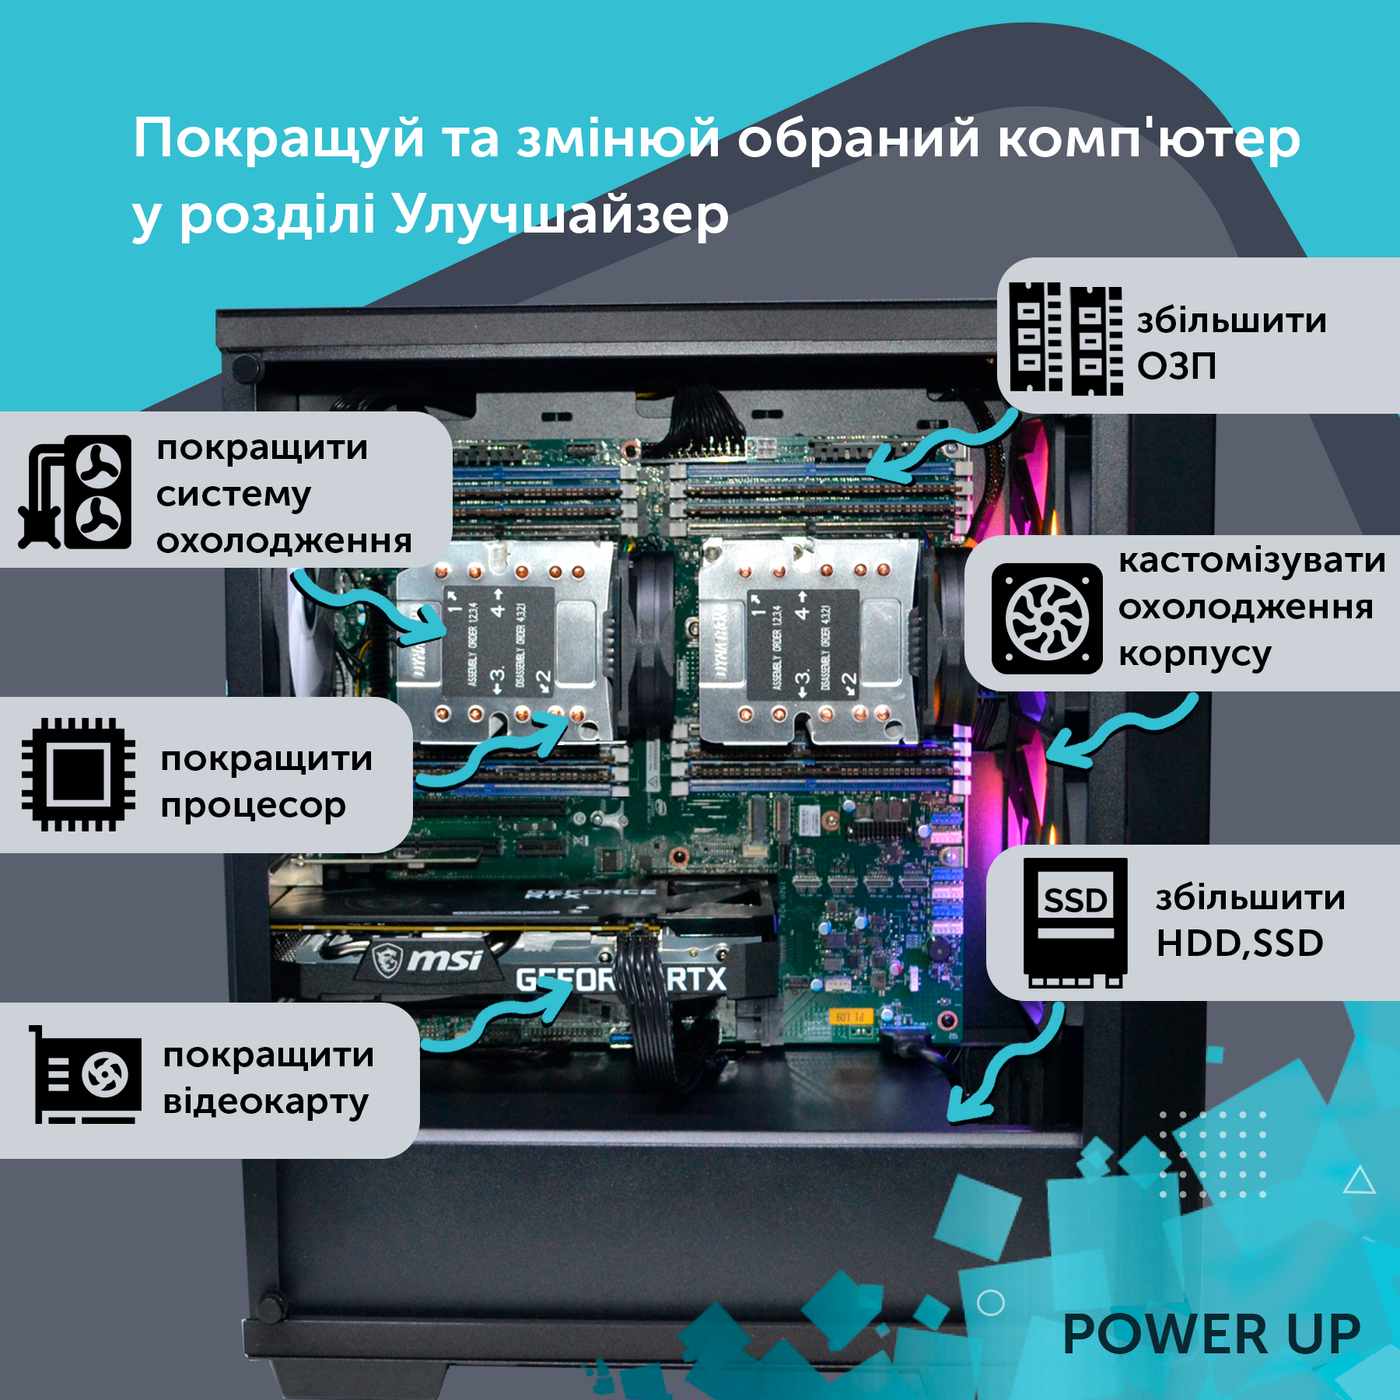 Рабочая станция PowerUp Desktop #234 Core i5 10400F/16 GB/SSD 512GB/NVIDIA Quadro RTX A2000 6GB